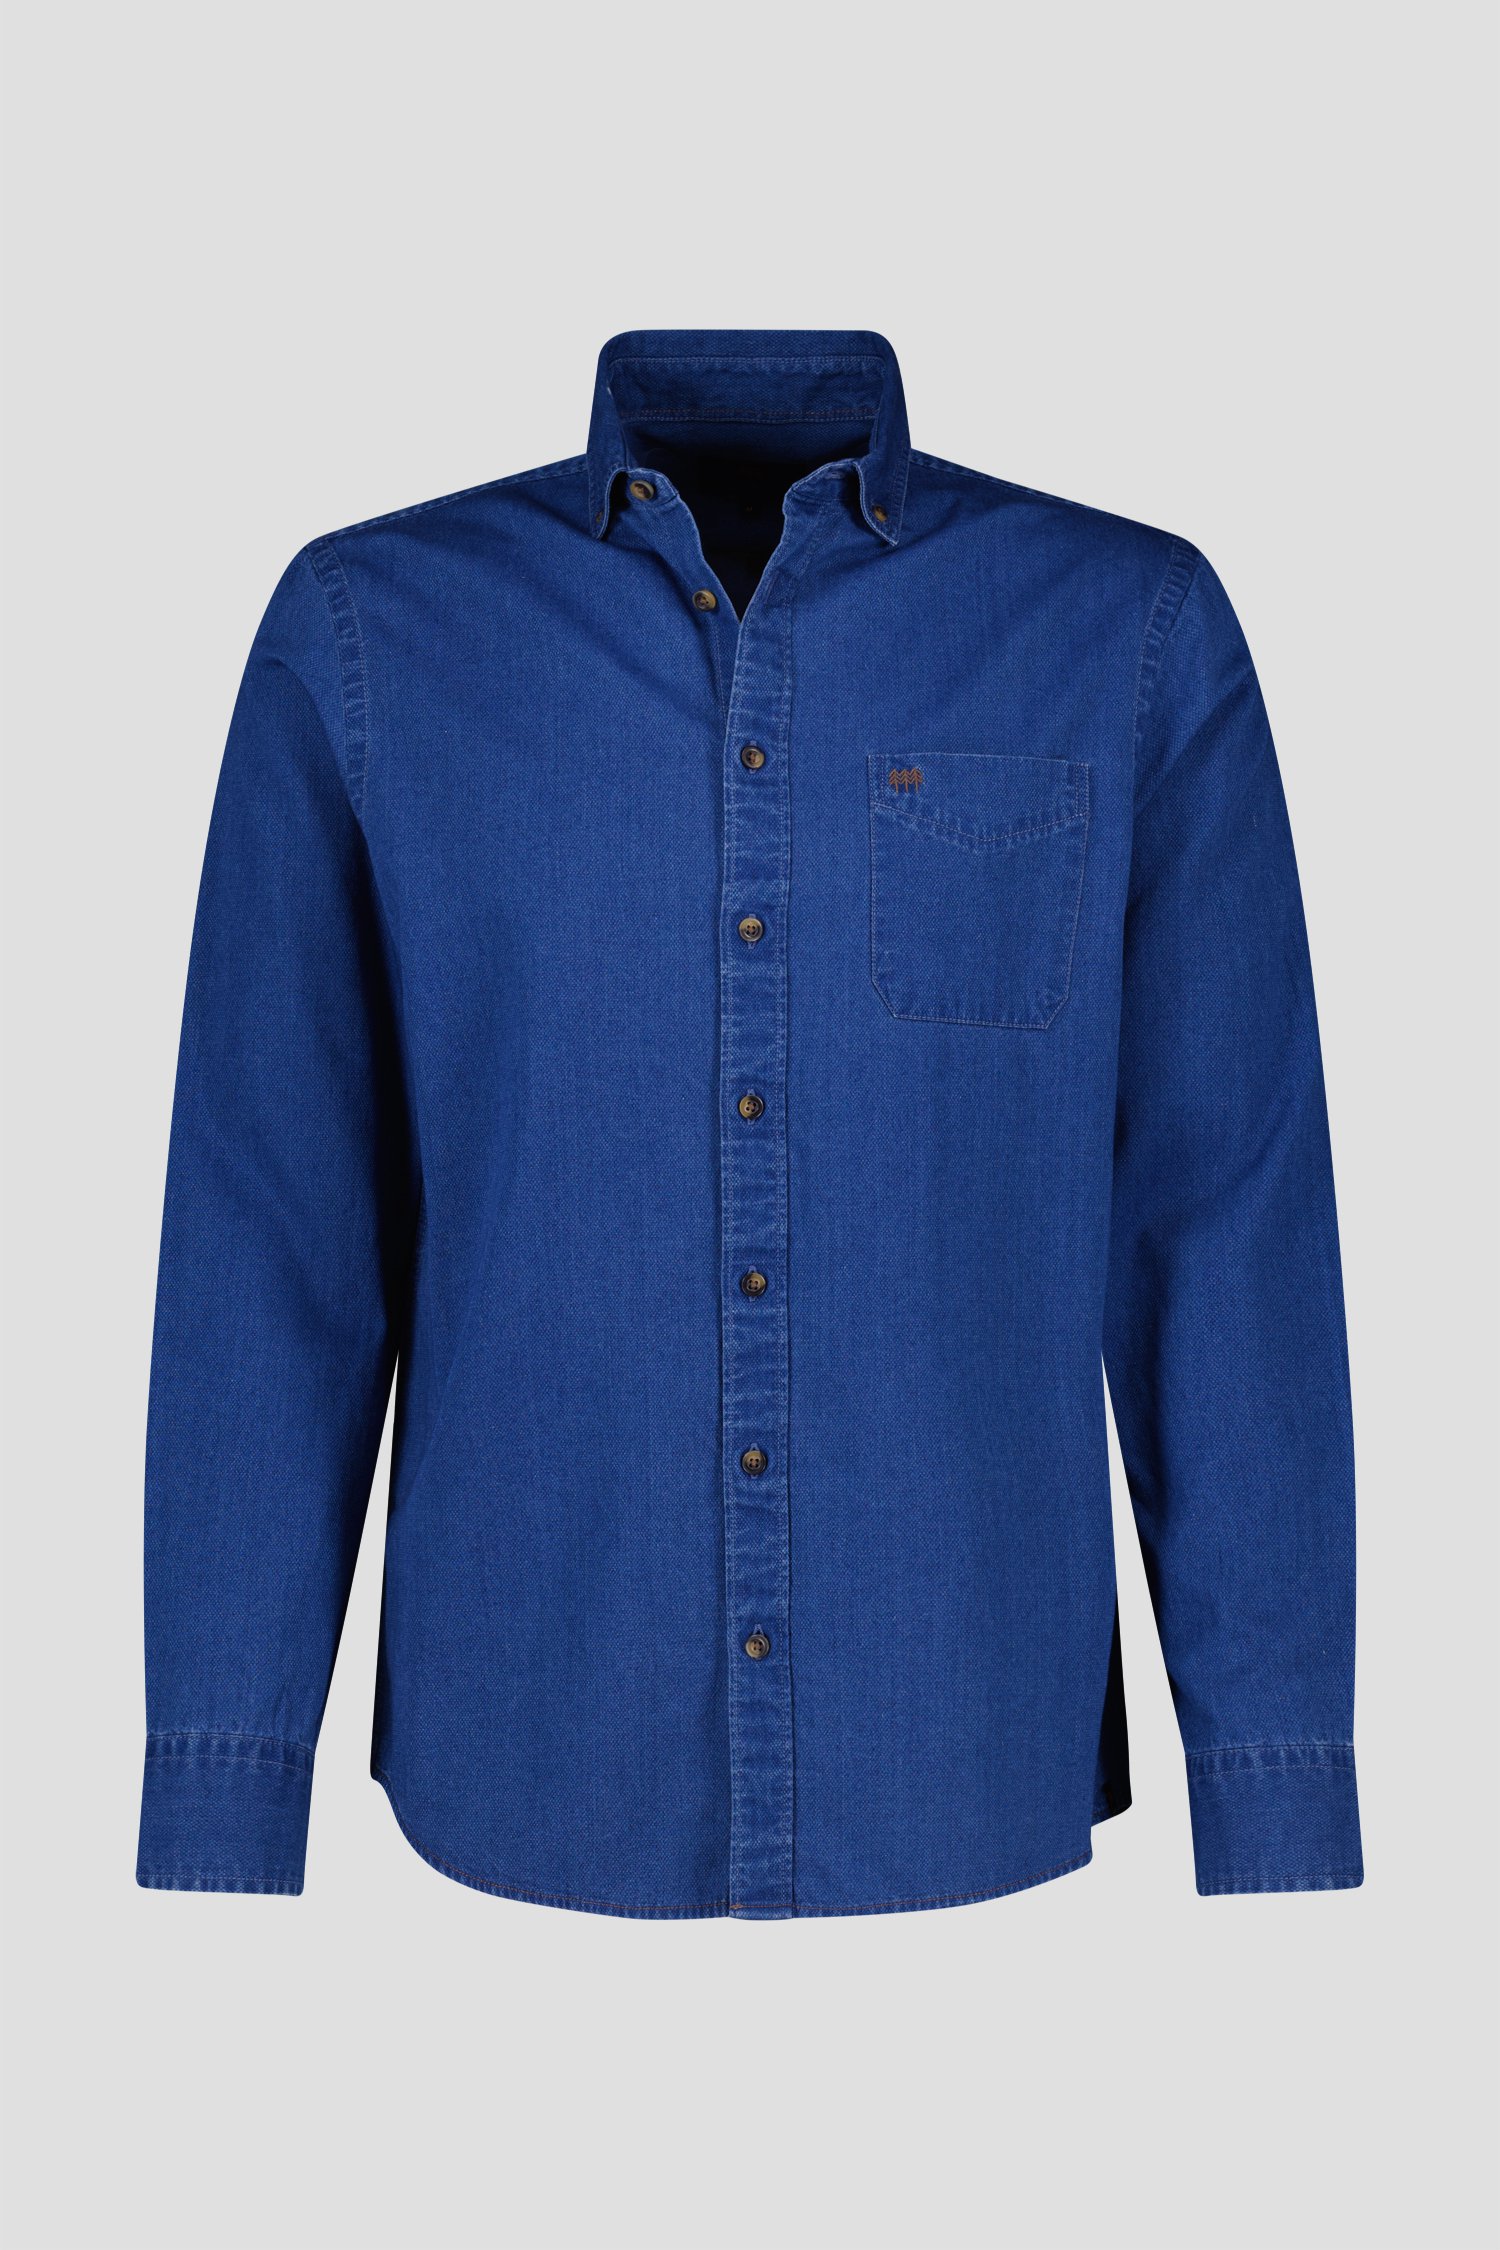 Blauw jeanshemd - Regular fit van Ravøtt voor Heren